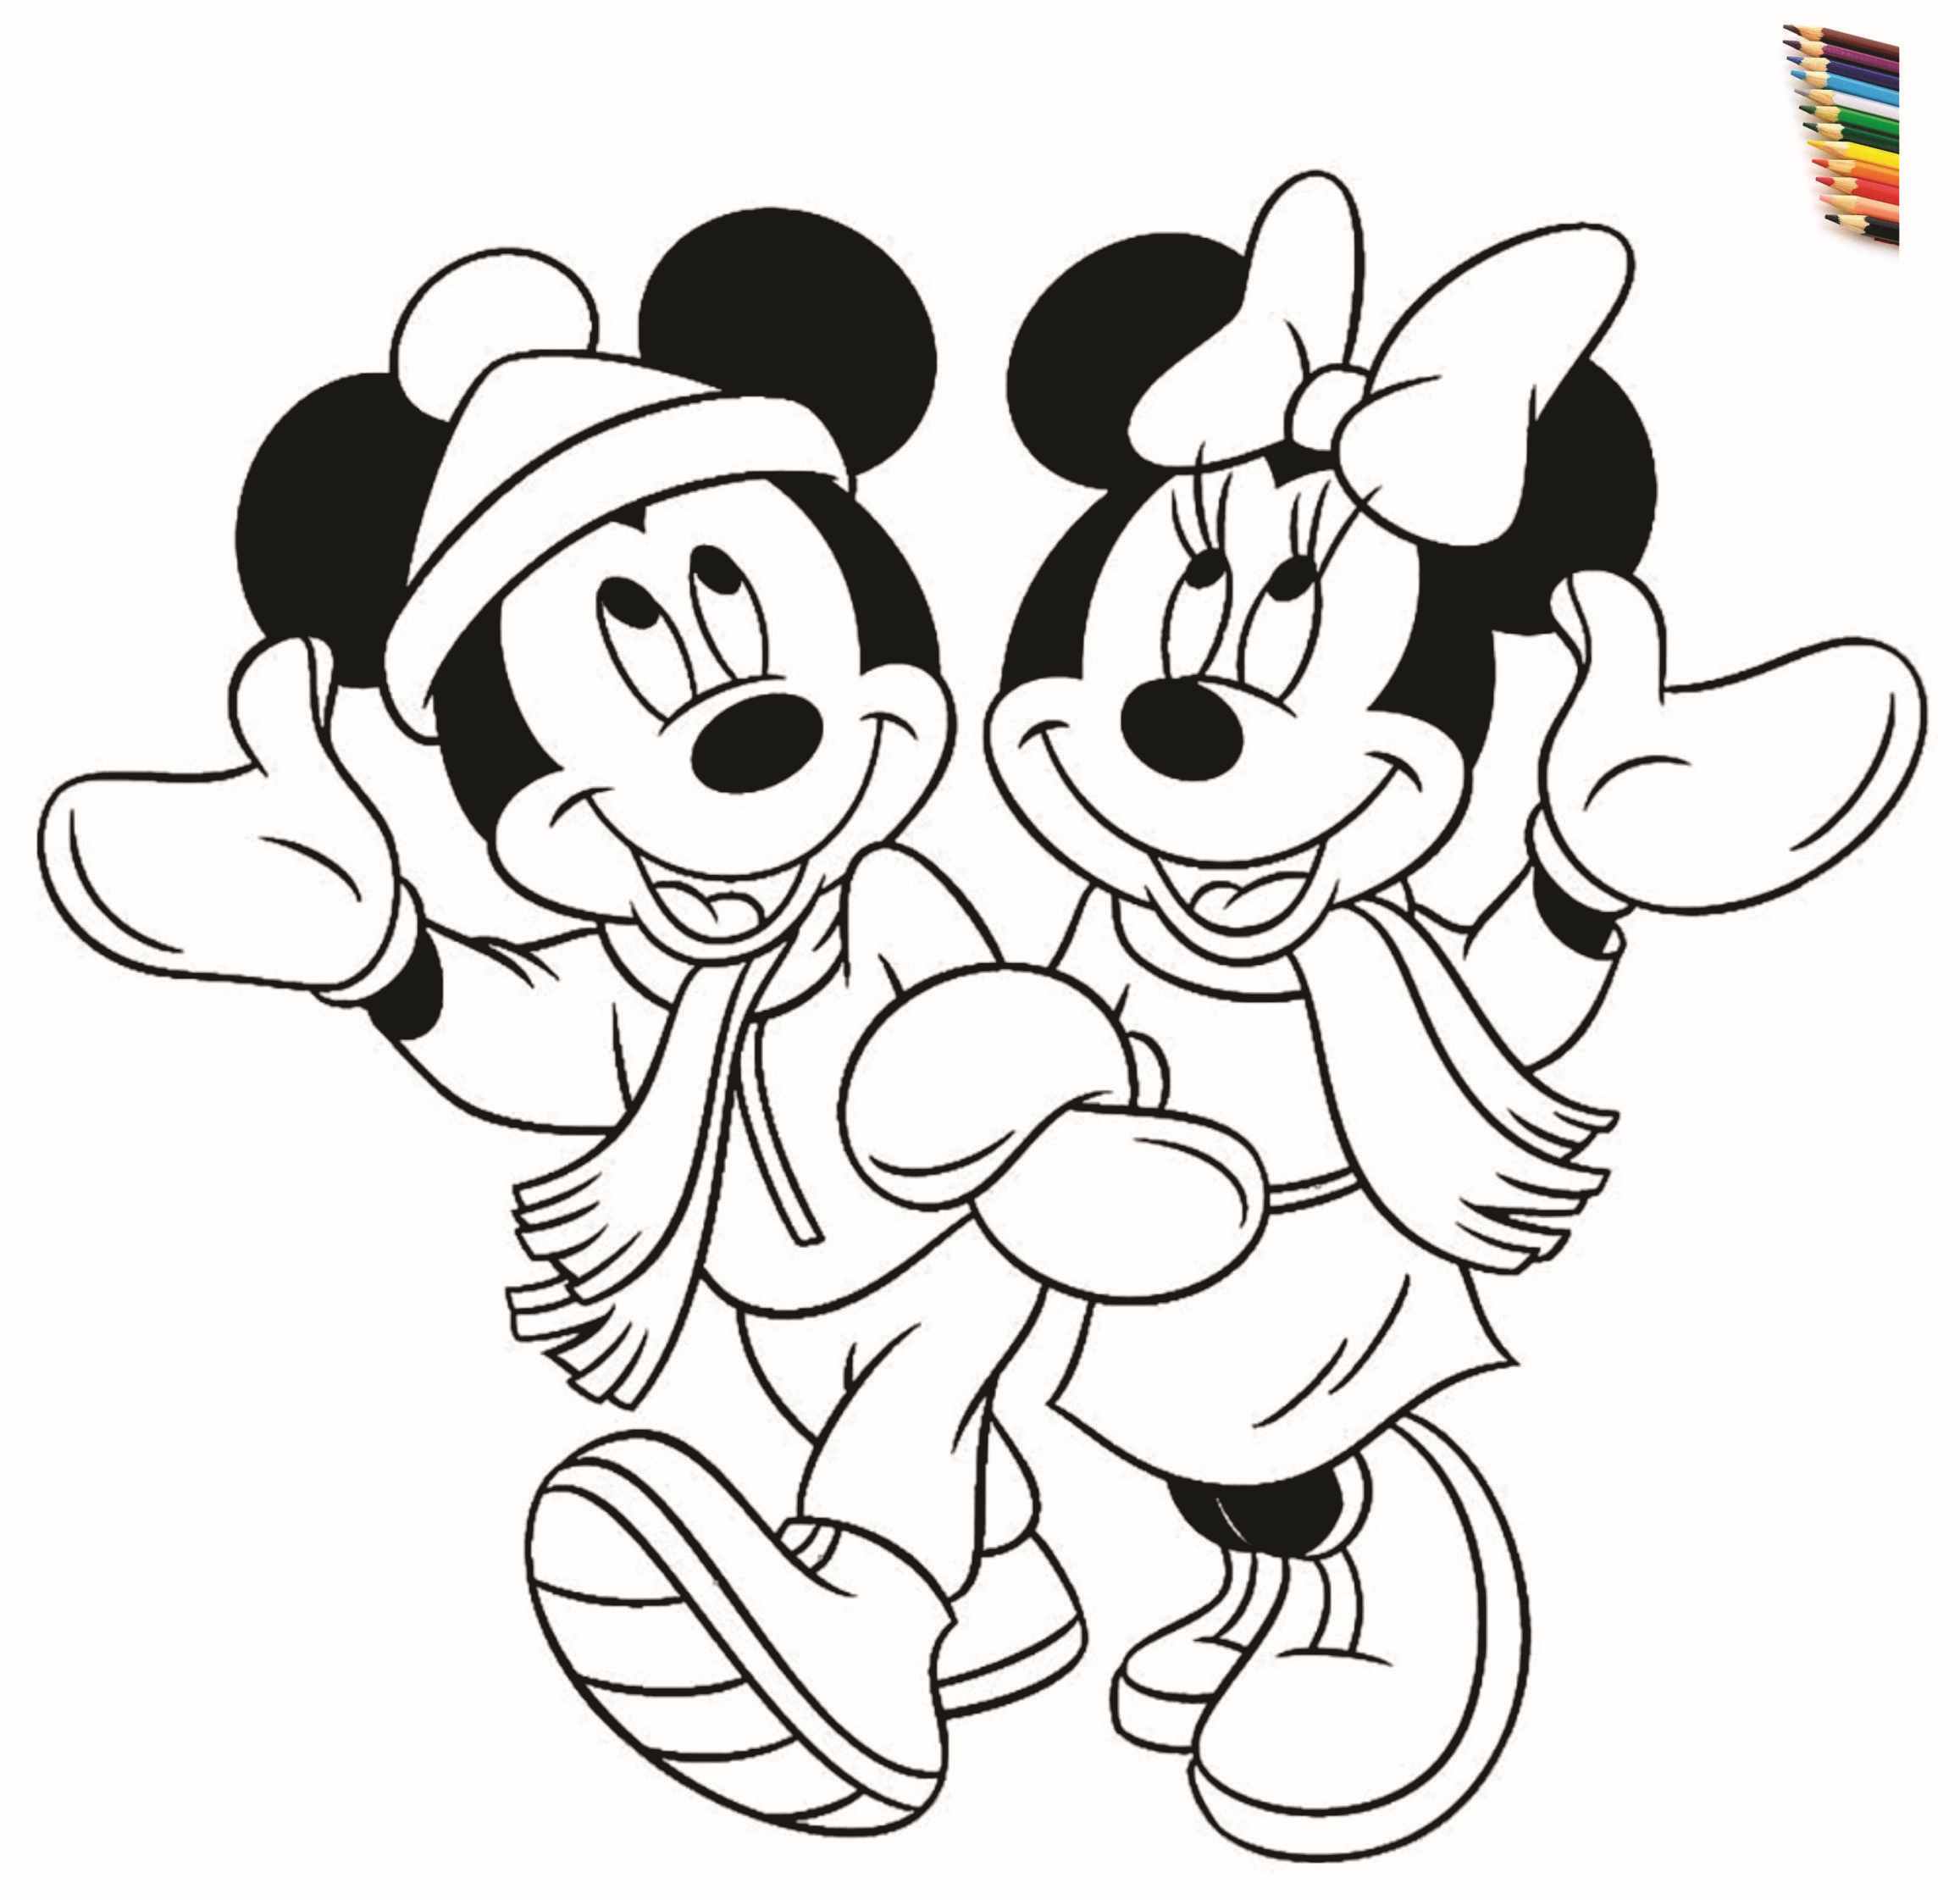 Микки раскраски распечатать. Микки Маус раскраска. Раскраски для девочек Микки Маус и Минни Маус. Раскраски для девочект Мики Маус. Раскраски для девочек Микки Маусы.